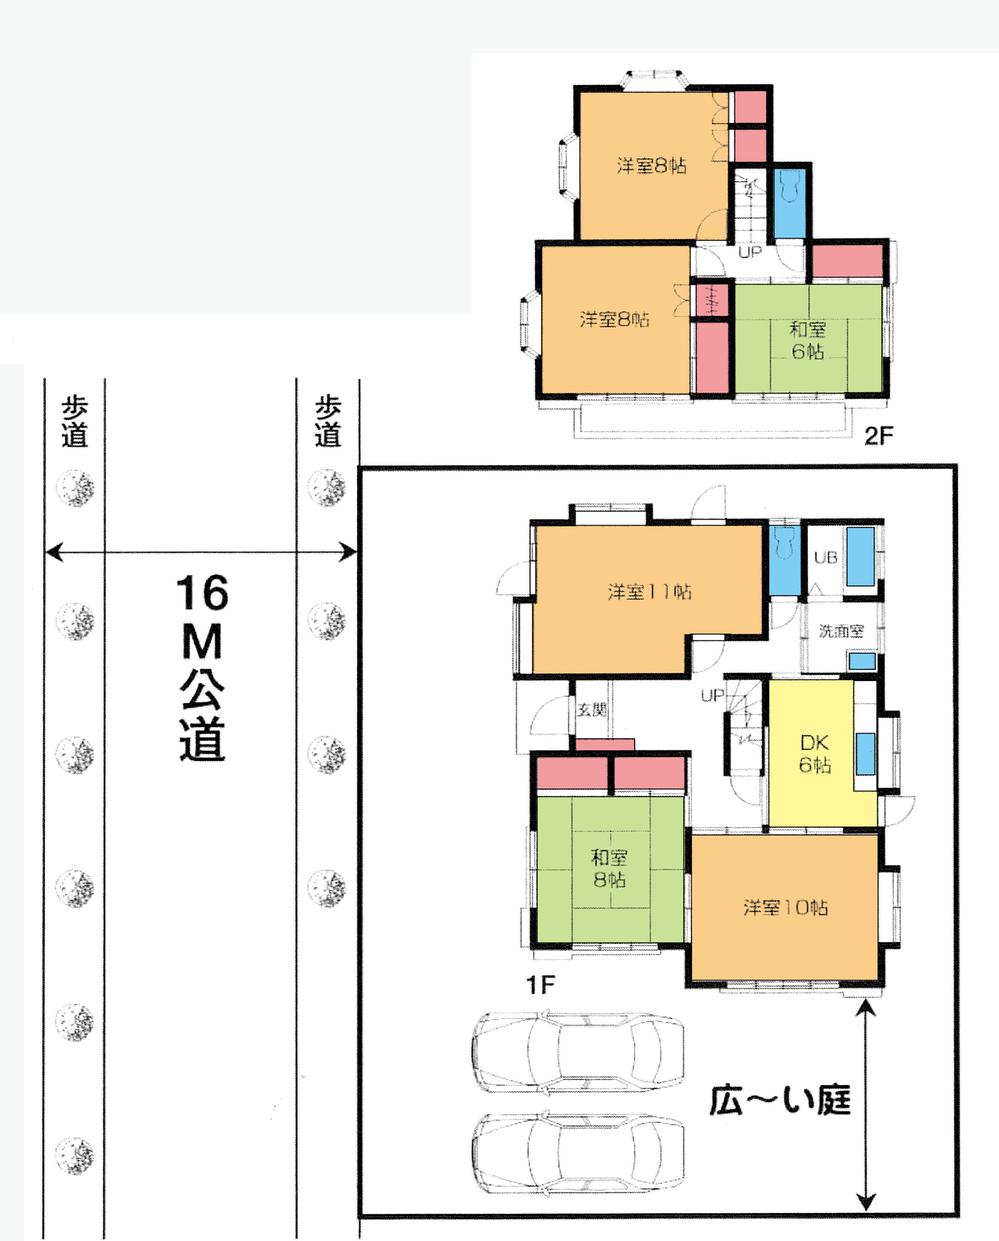 Floor plan. 25,800,000 yen, 6DK, Land area 230.28 sq m , Building area 132.48 sq m floor plan